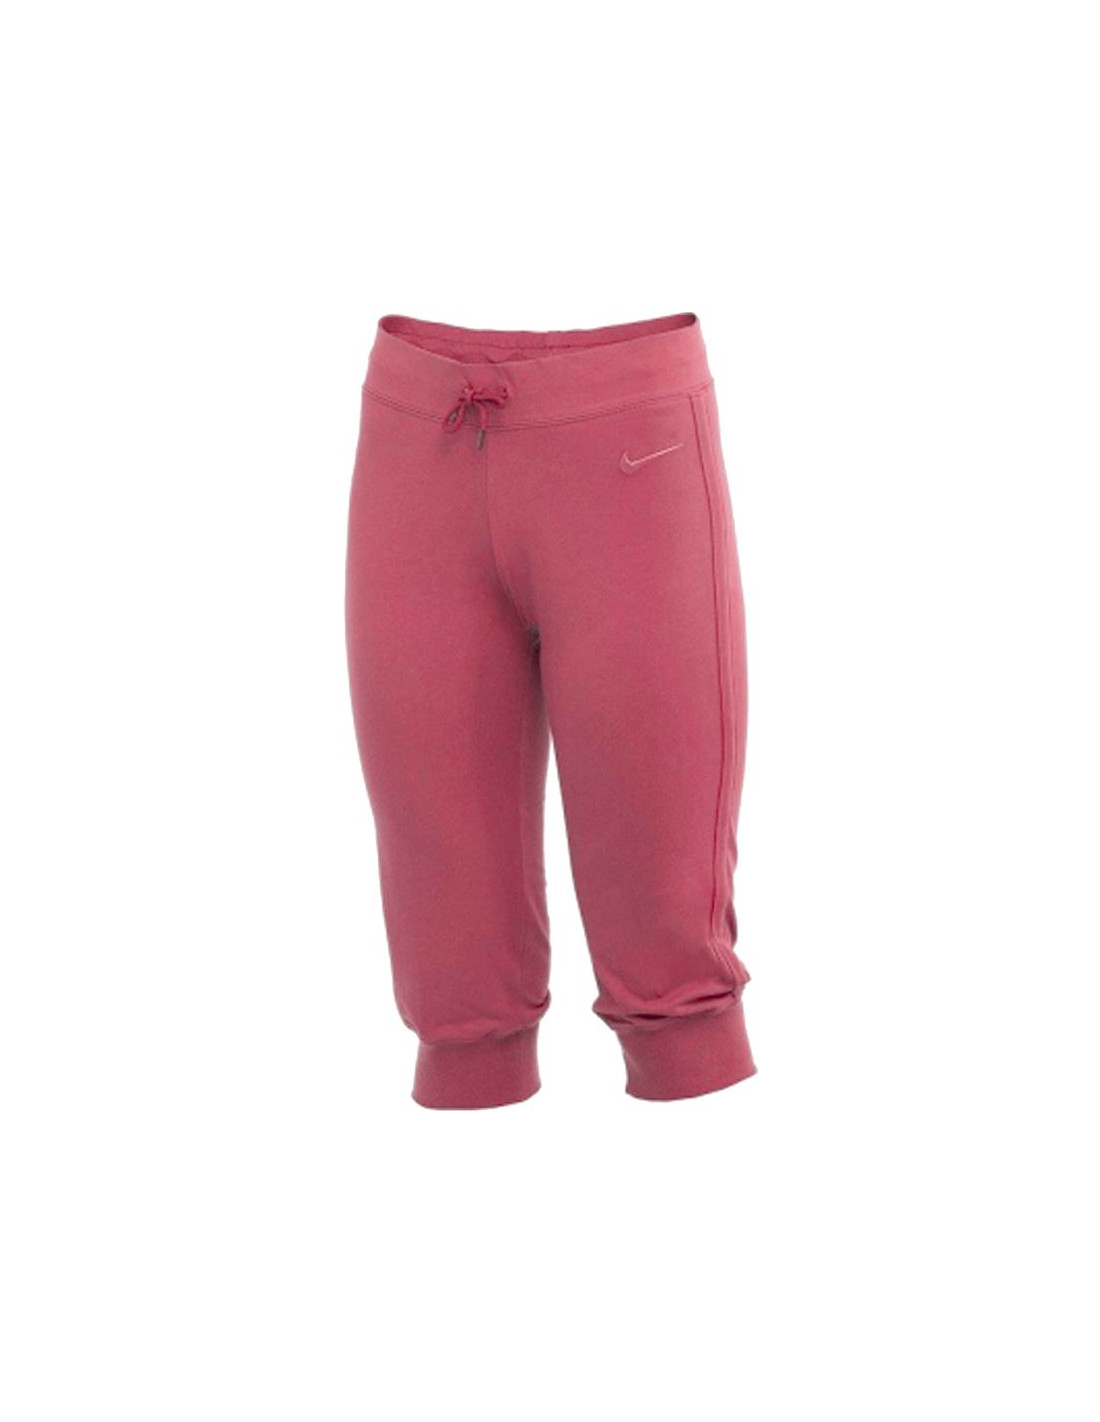 Pantalones nike capri rosa